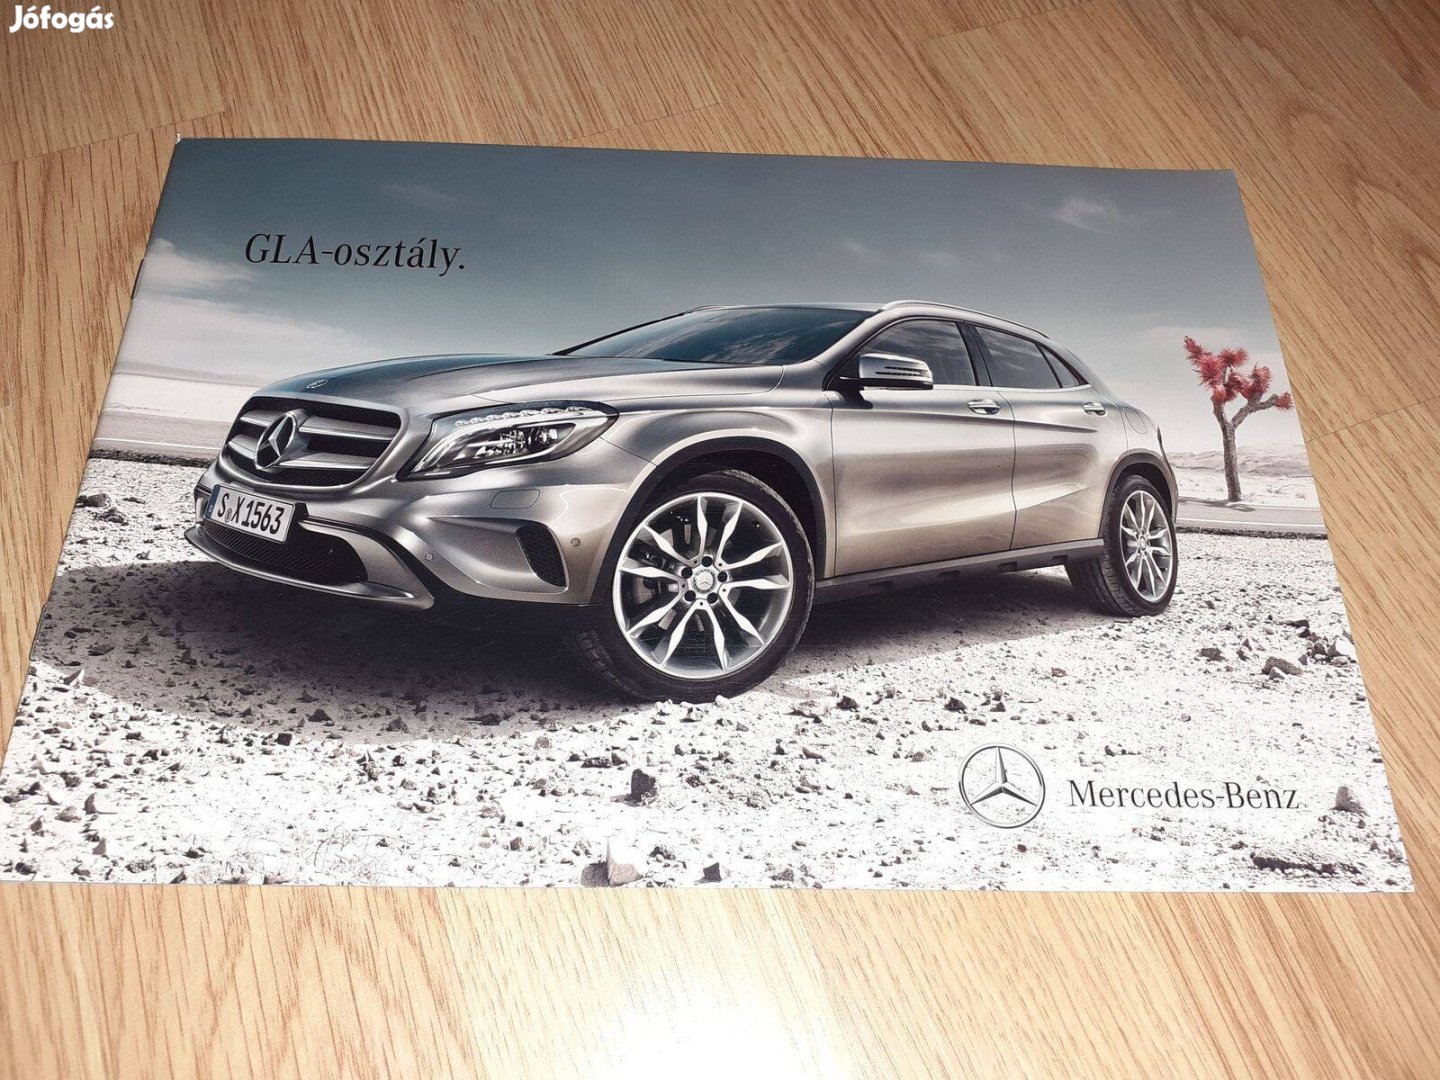 Mercedes GLA osztály prospektus - 2013, magyar nyelvű